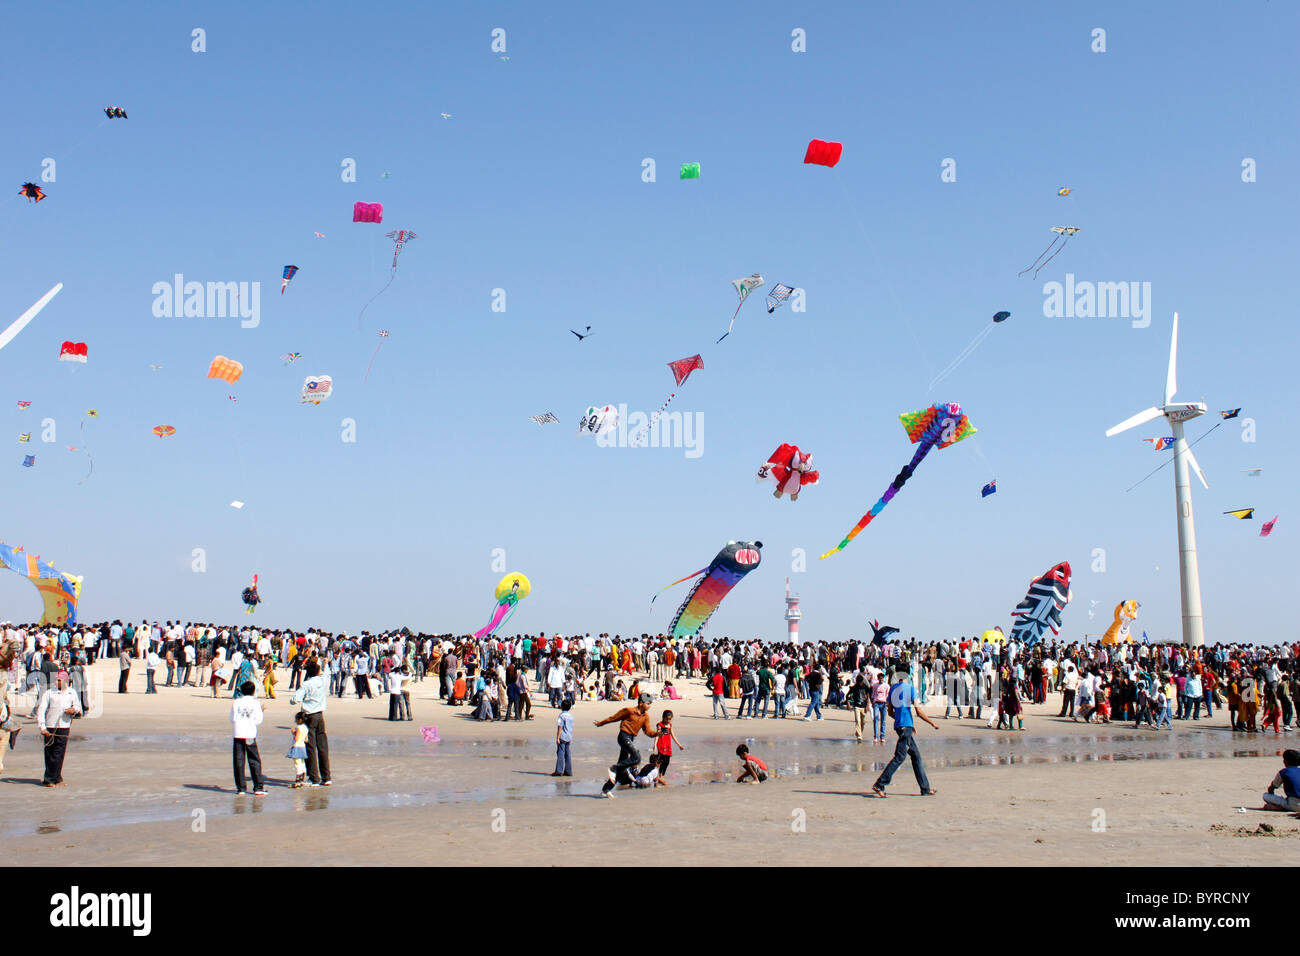 Kite flying festival india hi